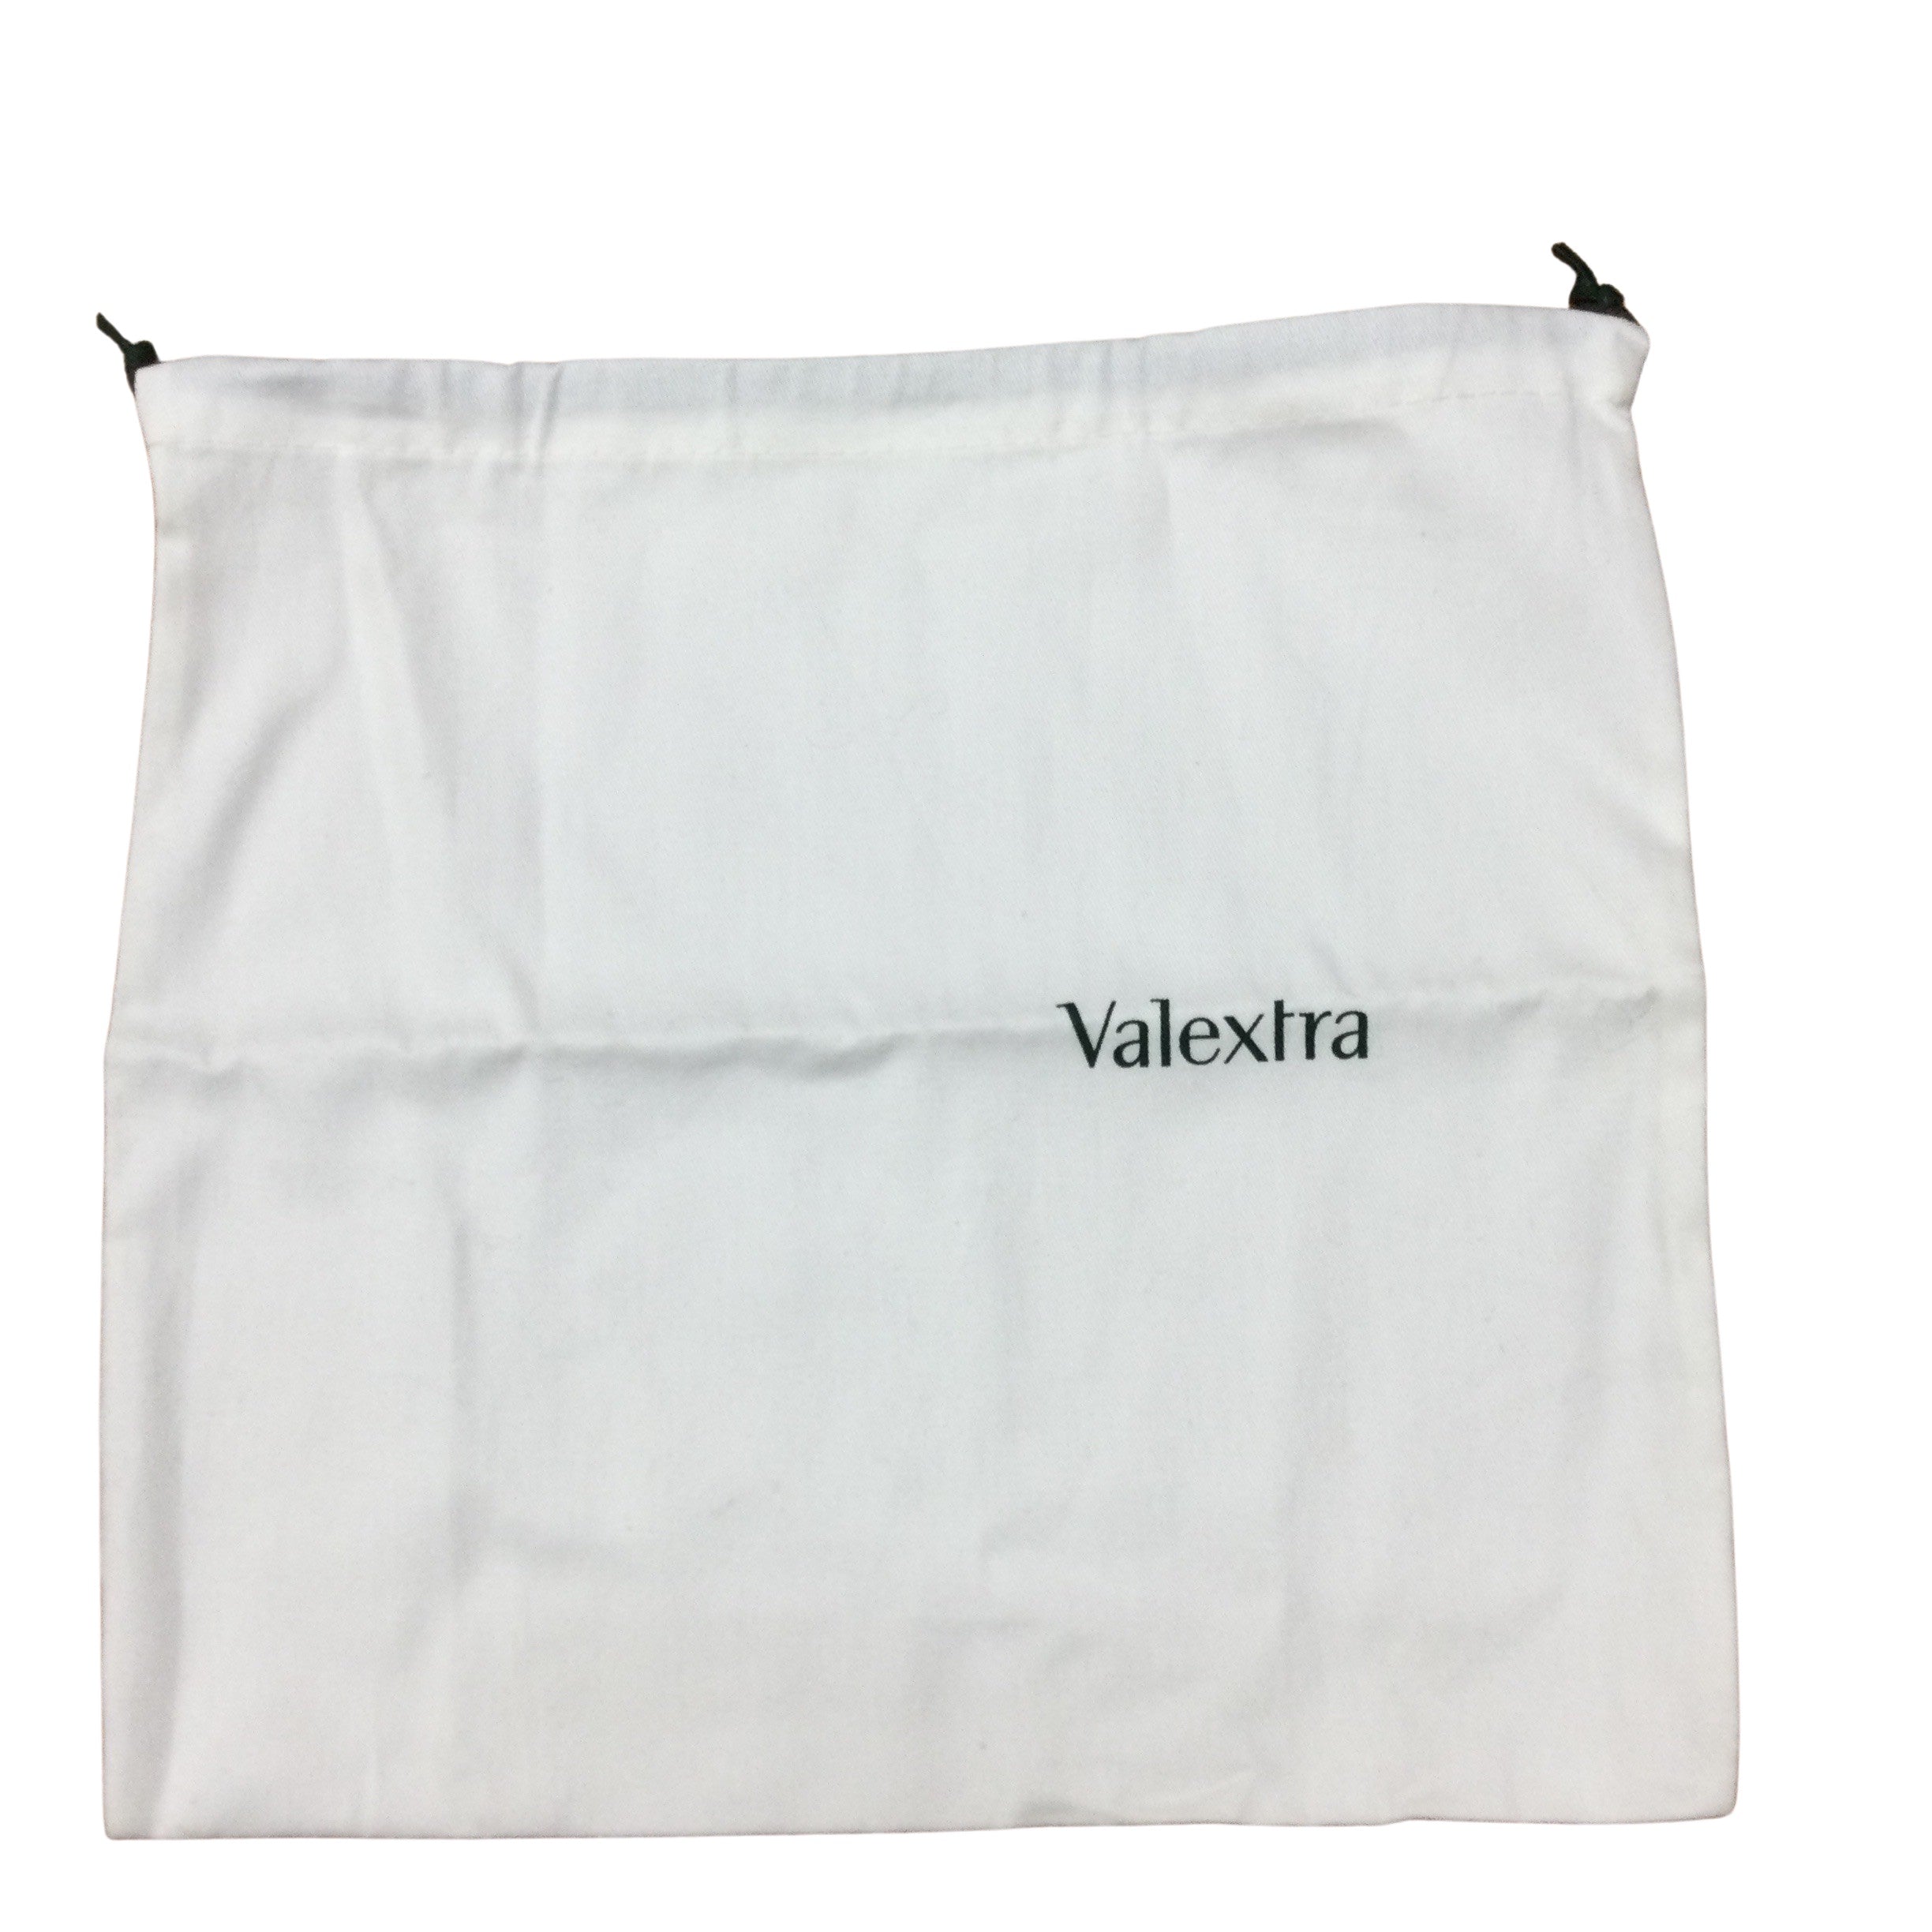 Valextra Structured Black Leather Shoulder Bag